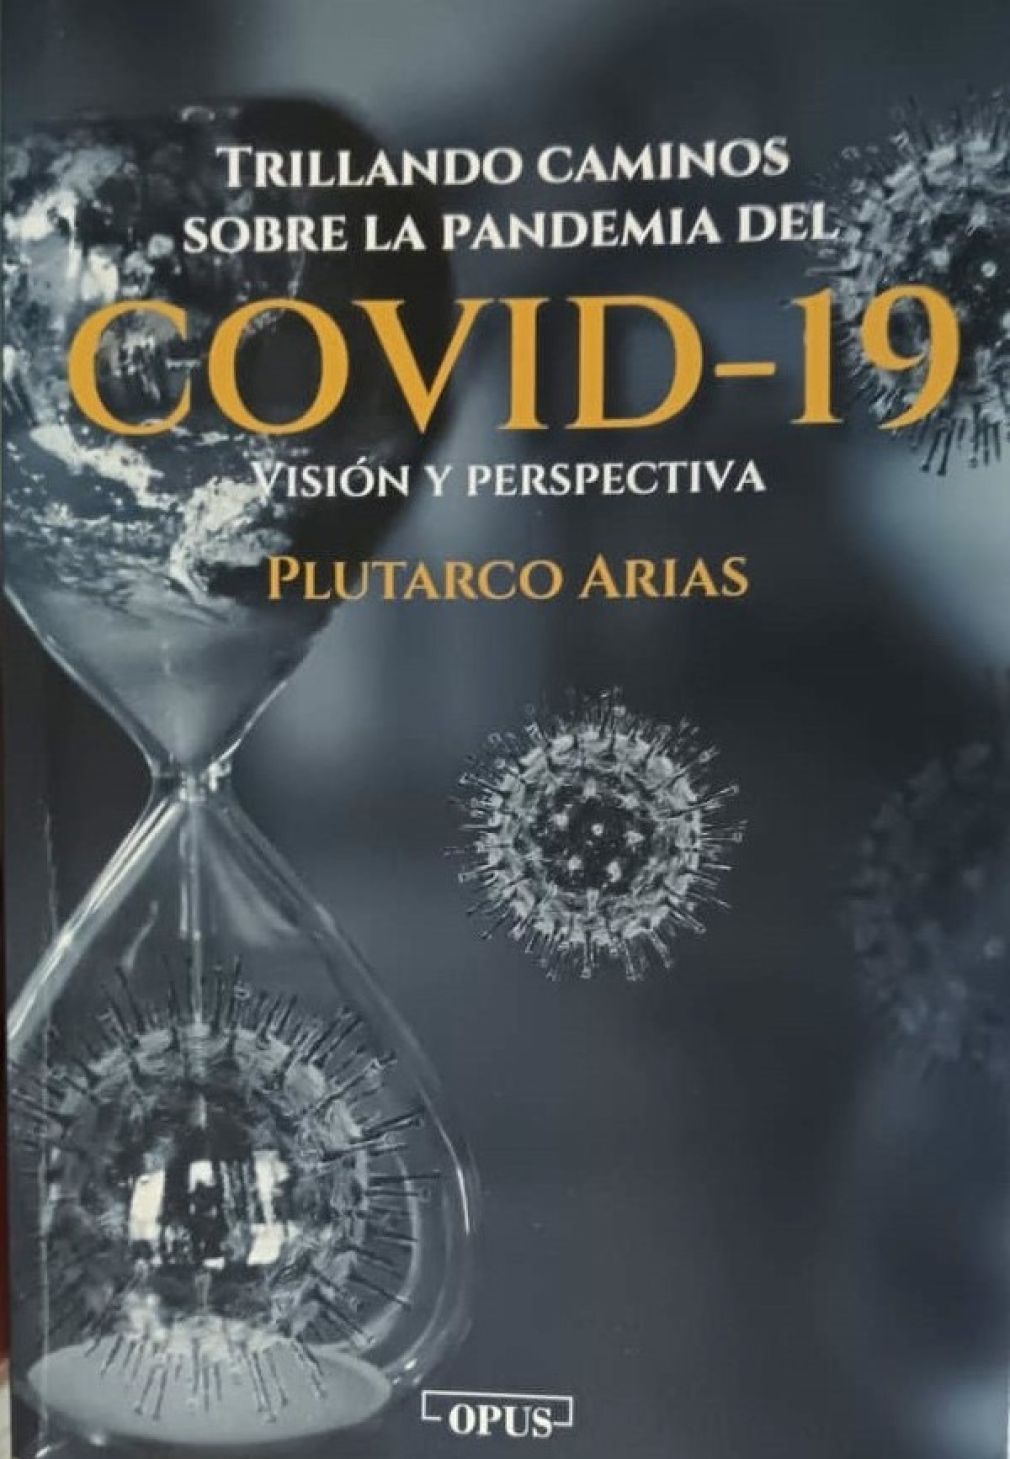 Portada del libro Trillando caminos sobre la pandemia COVID 19. Visión y perspectivas.